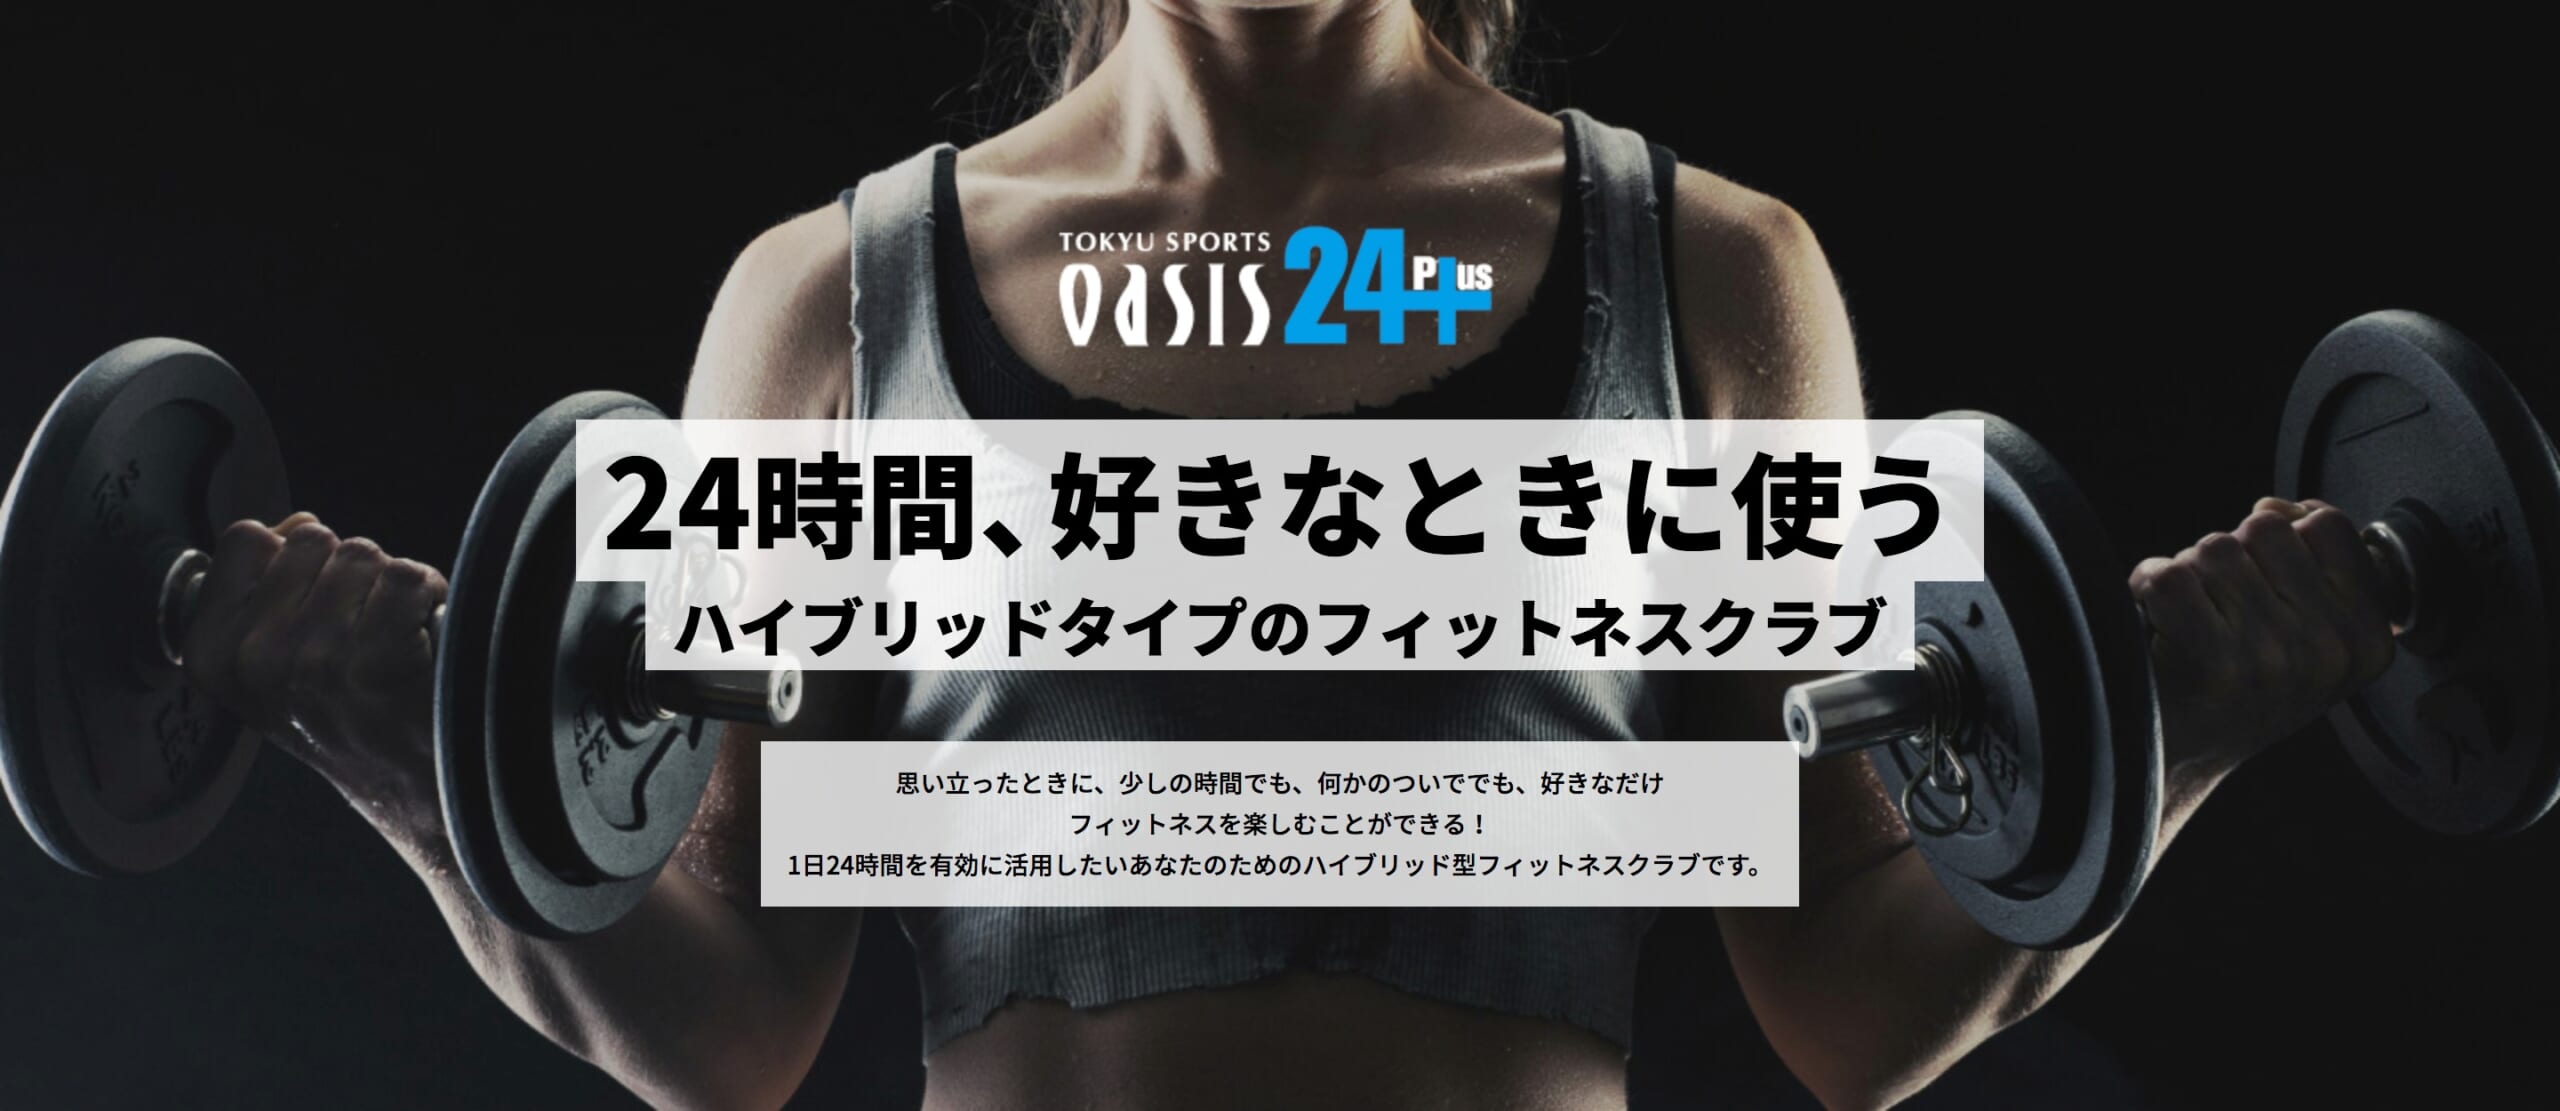 東急スポーツオアシス 新宿24Plusの画像